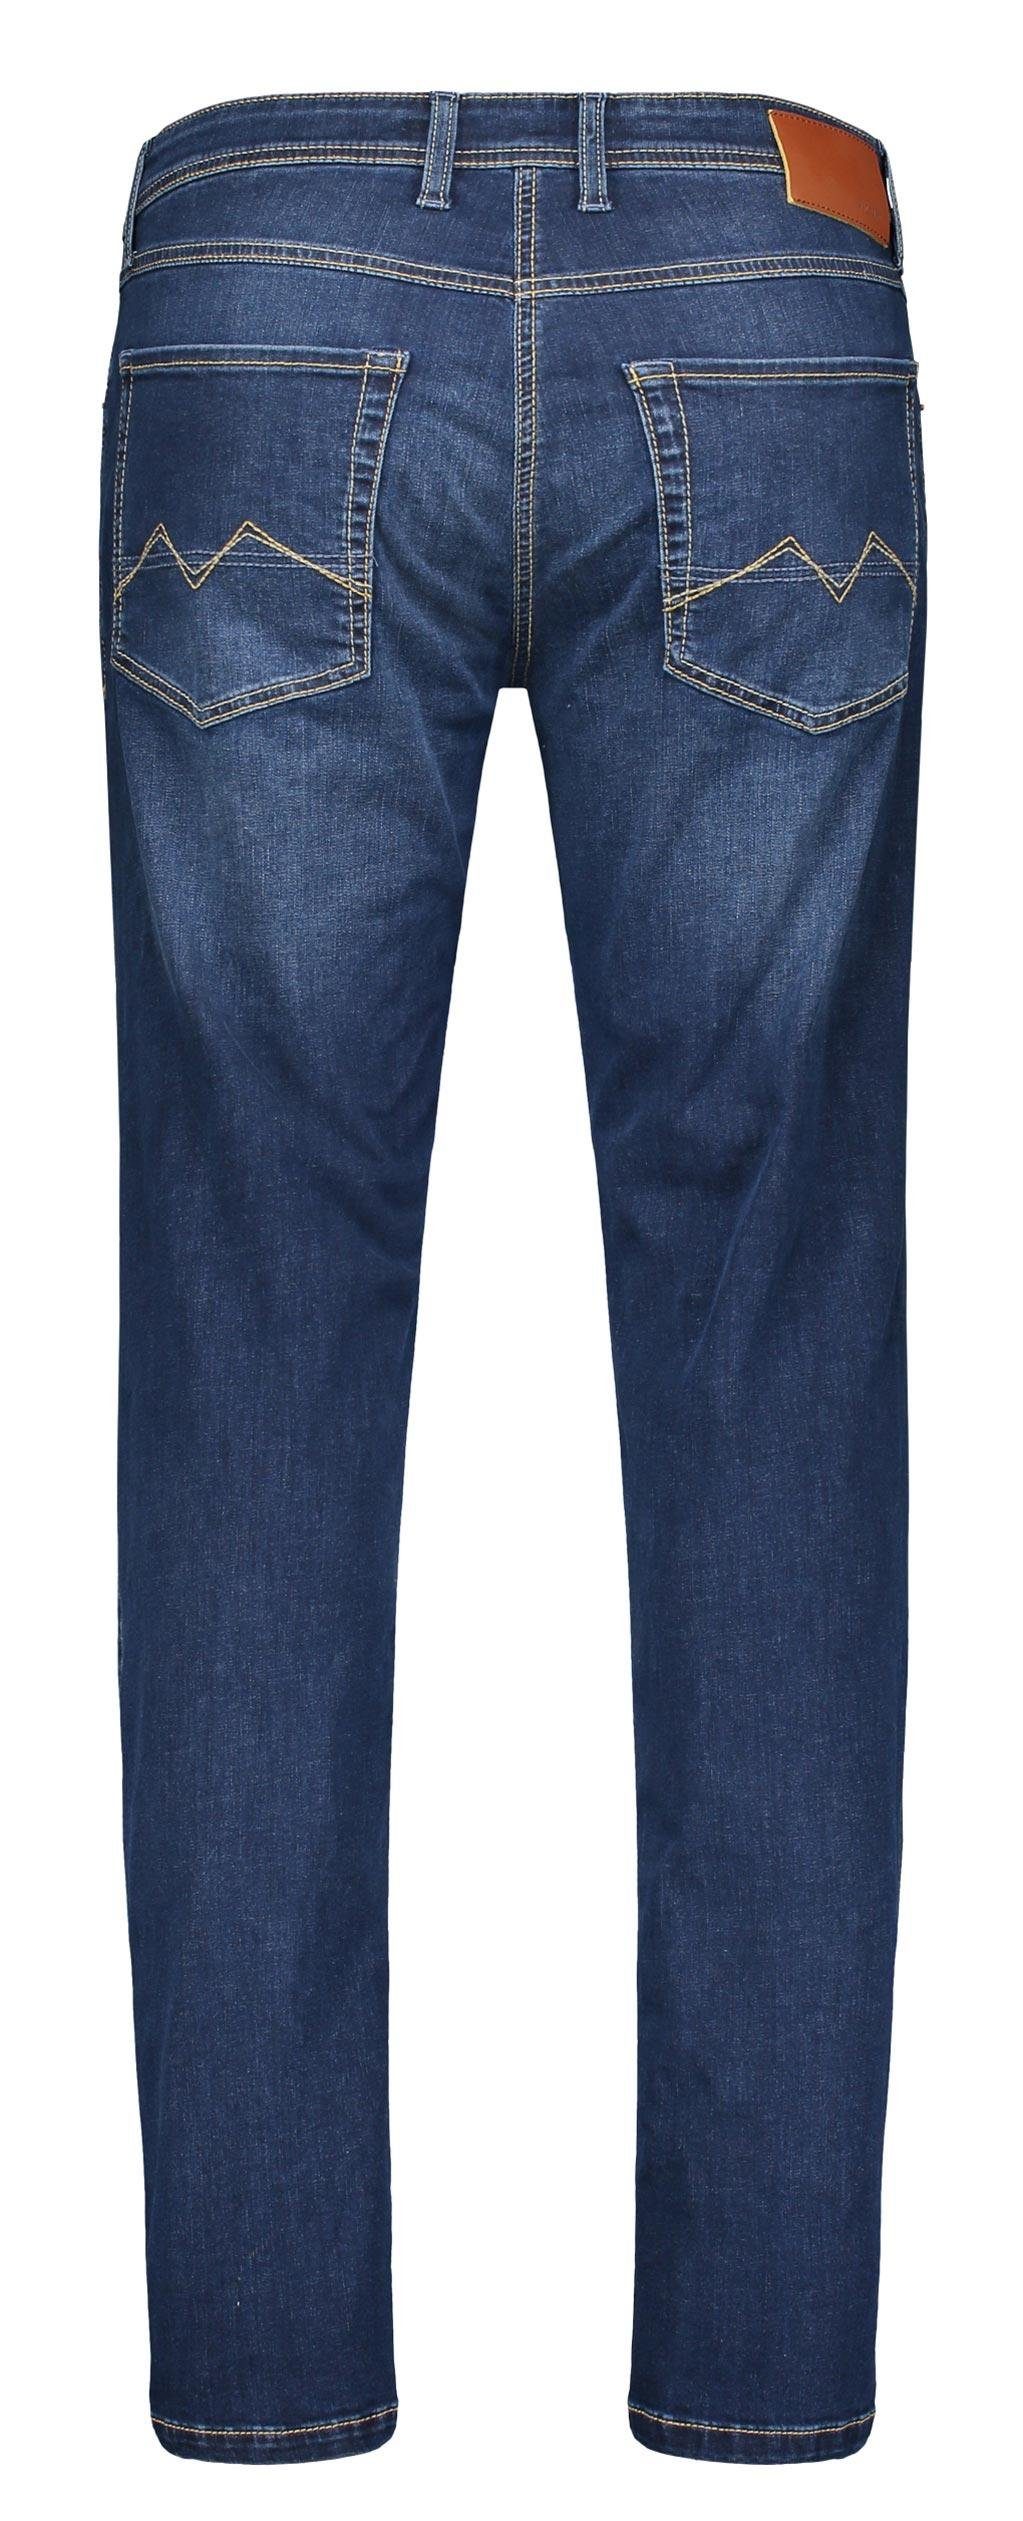 MAC 5-Pocket-Jeans wash ARNE dark H629 MAC authentic 0501-00-1792 indigo